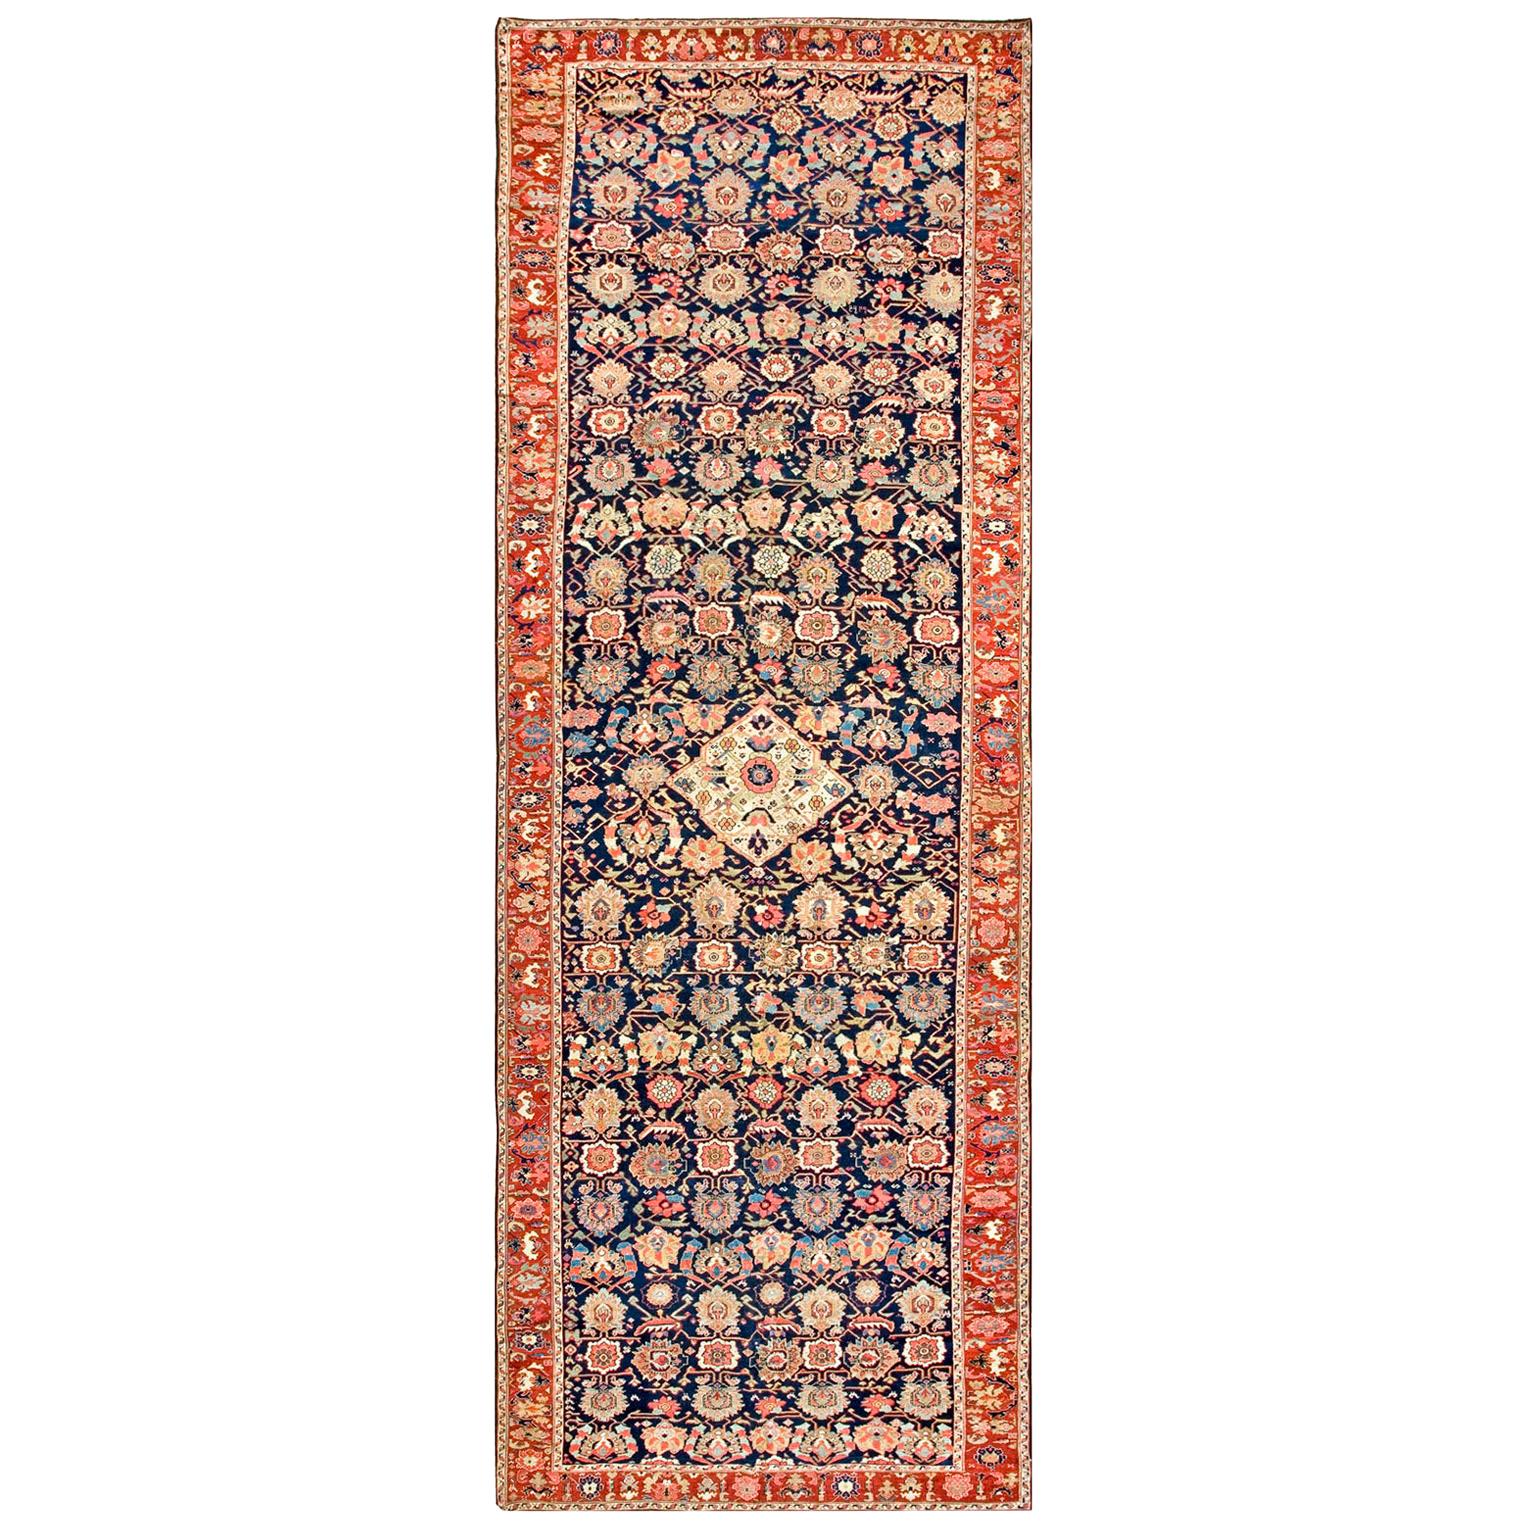 Anfang des 19. Jahrhunderts N.W. Persischer Galerieteppich ( 6'10" x 20' - 208 x 610)